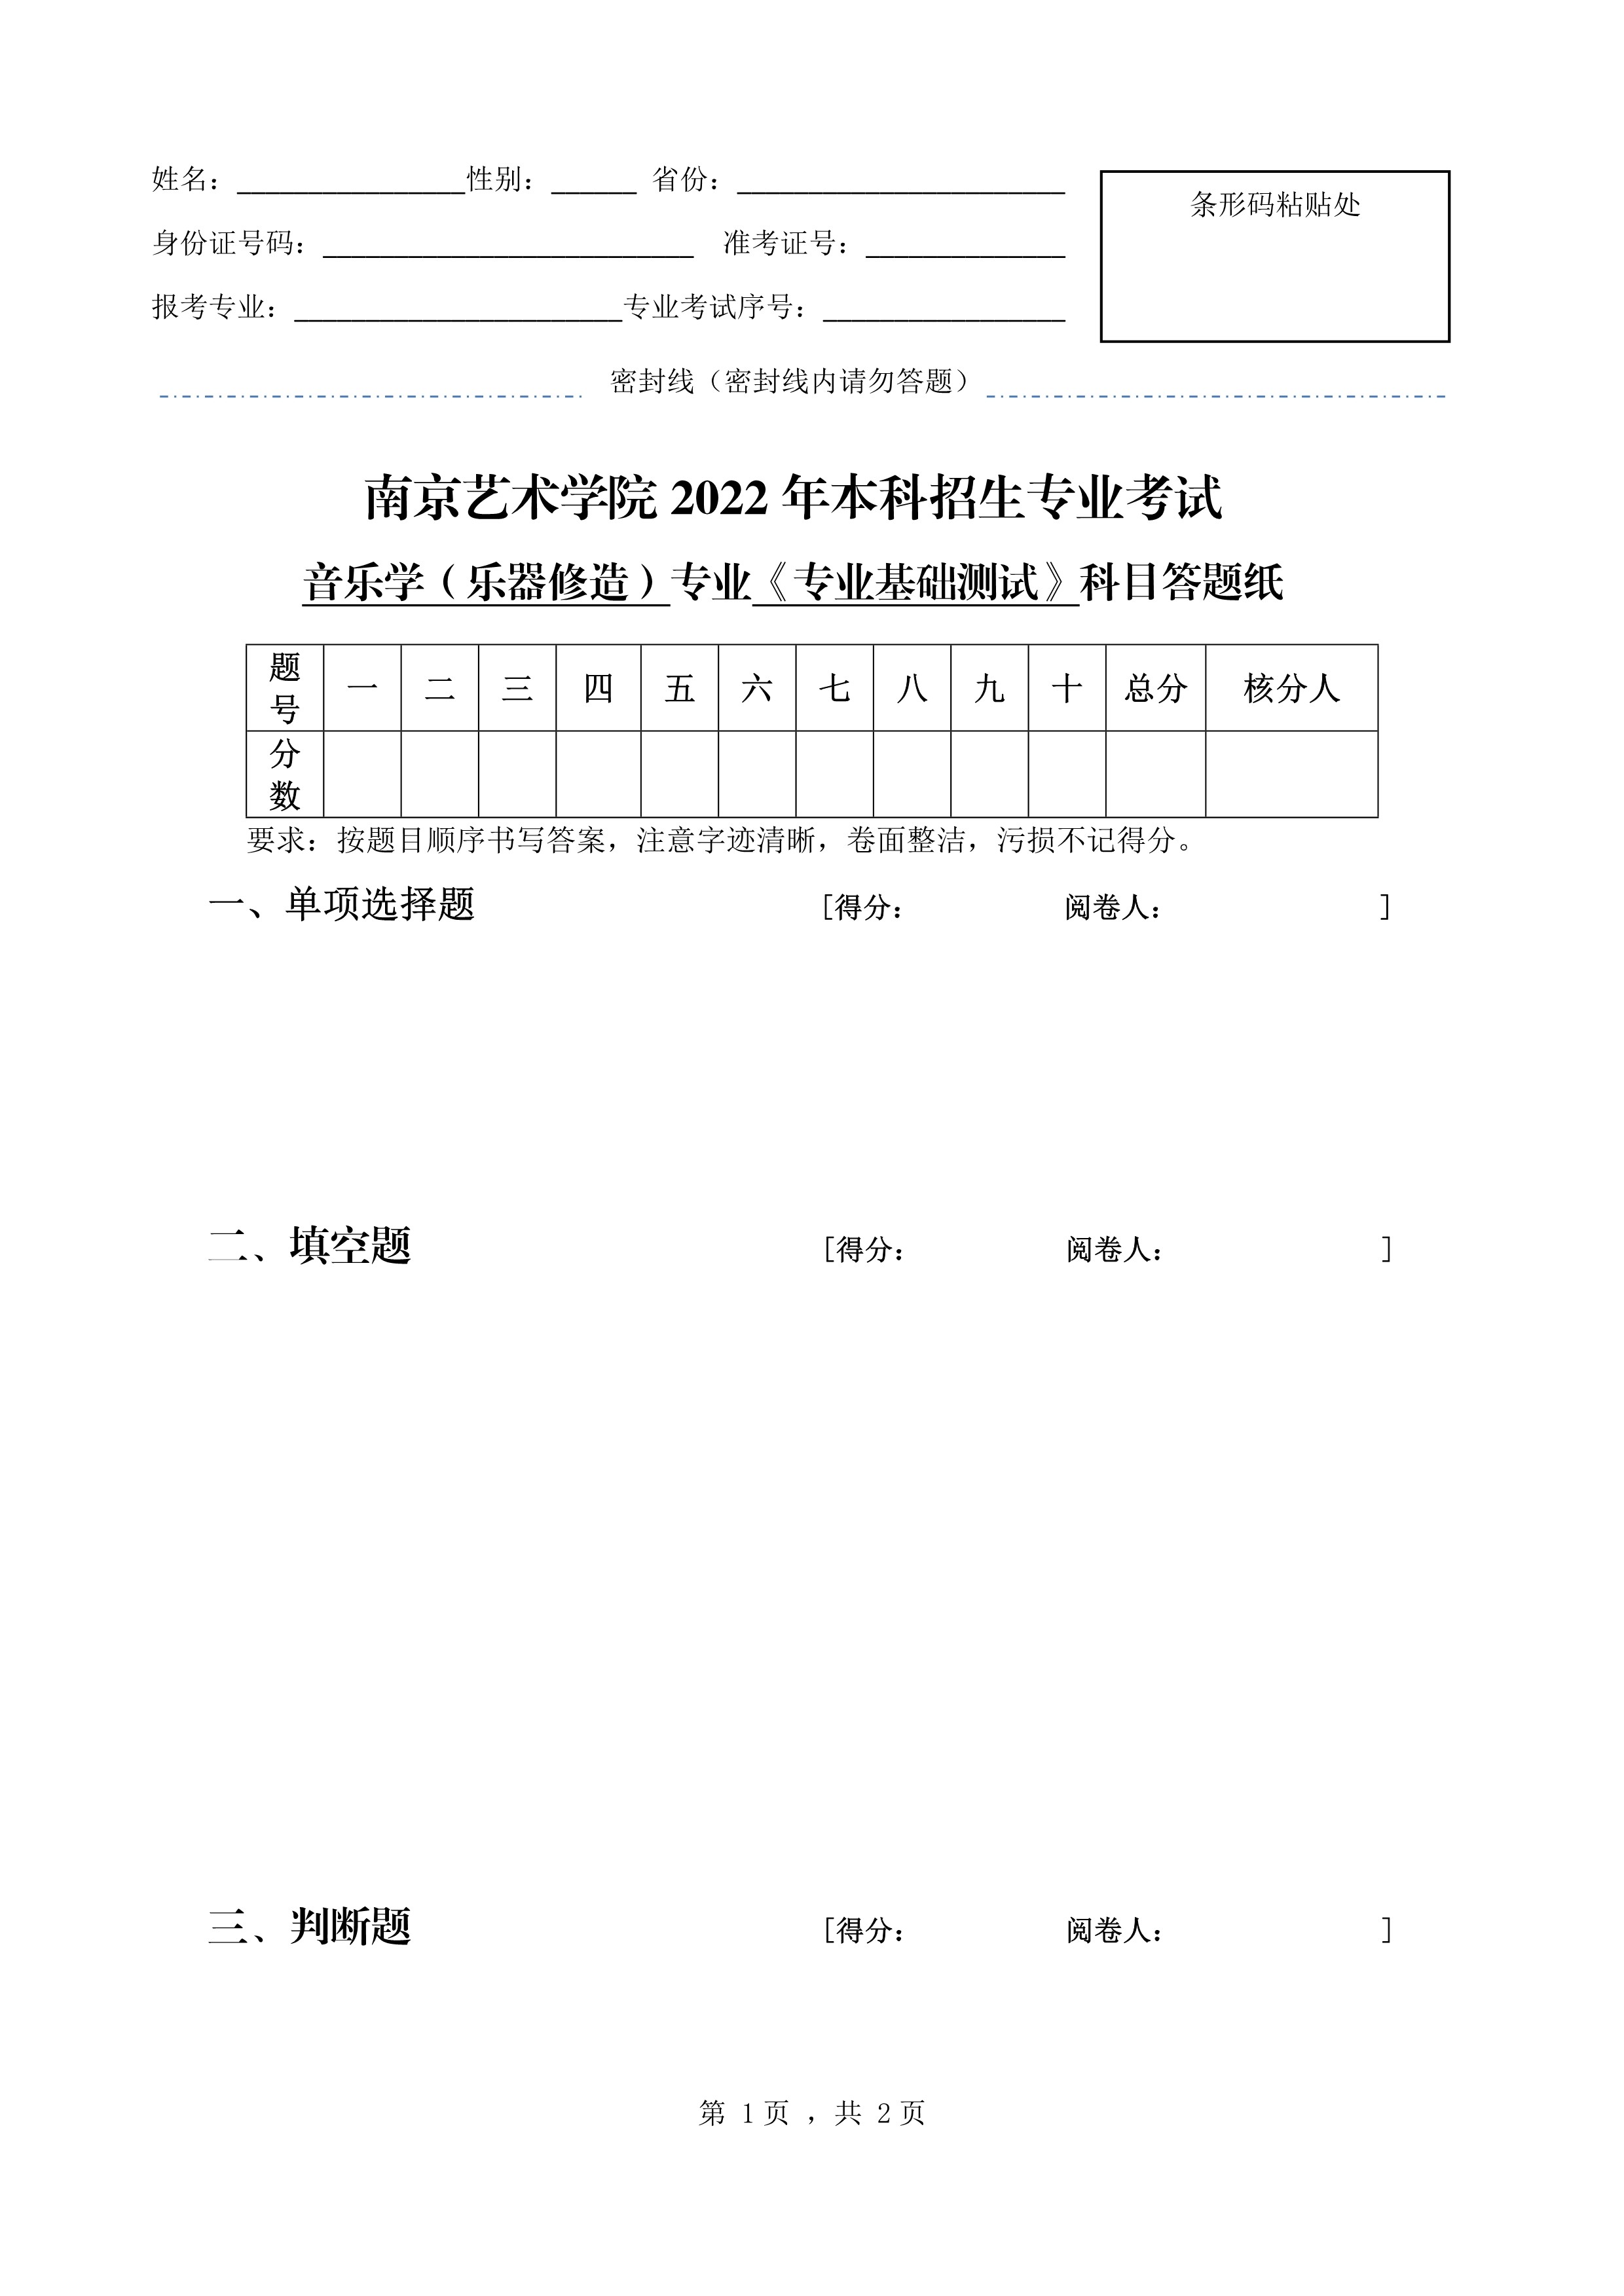 南京艺术学院2022年本科招生音乐学（乐器修造）专业《专业基础测试》科目考试答题纸_1.jpg